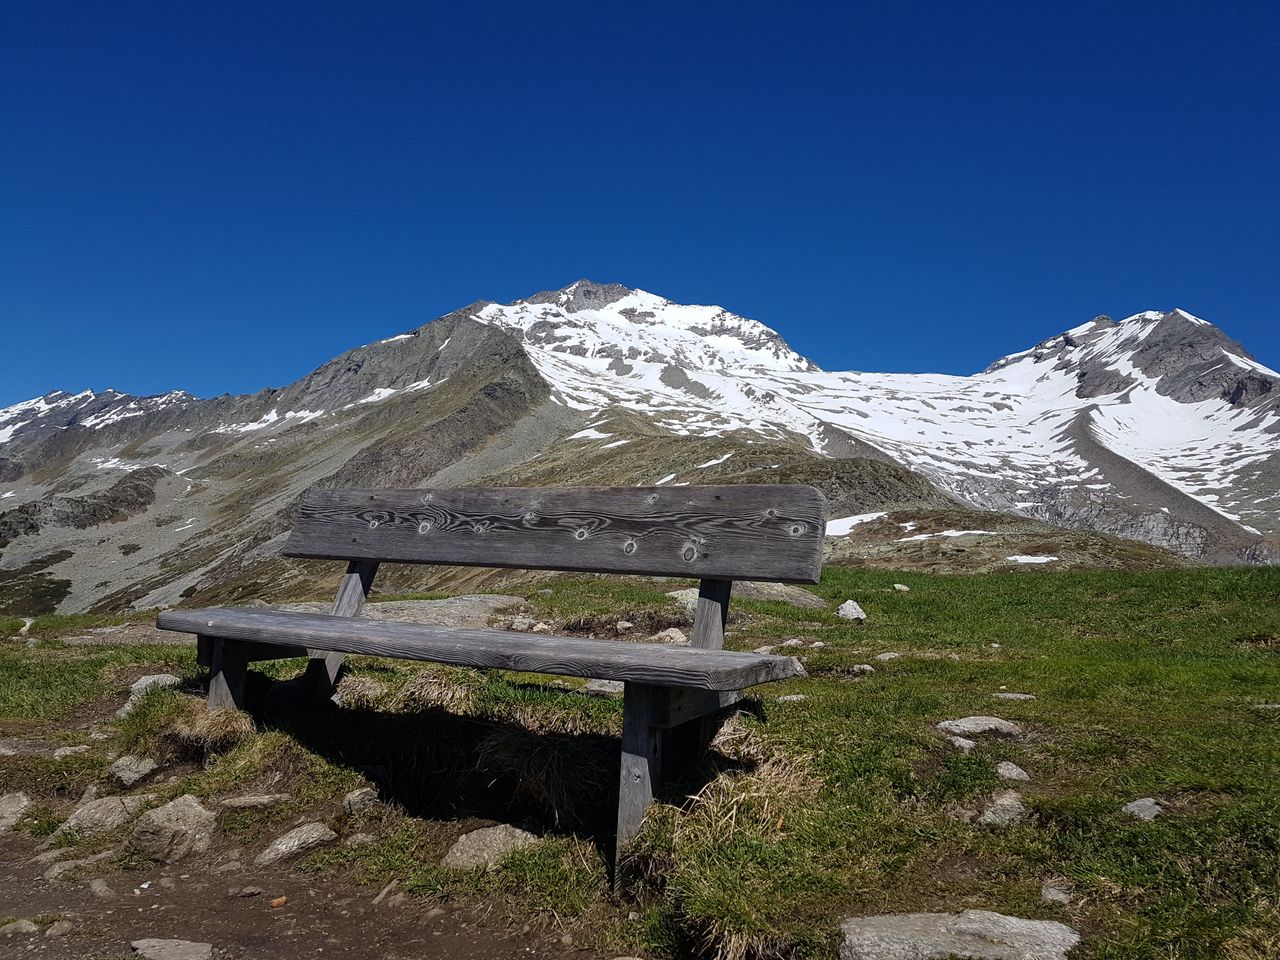 Sommer in Tirol - 4 Tage bei Mayrhofen